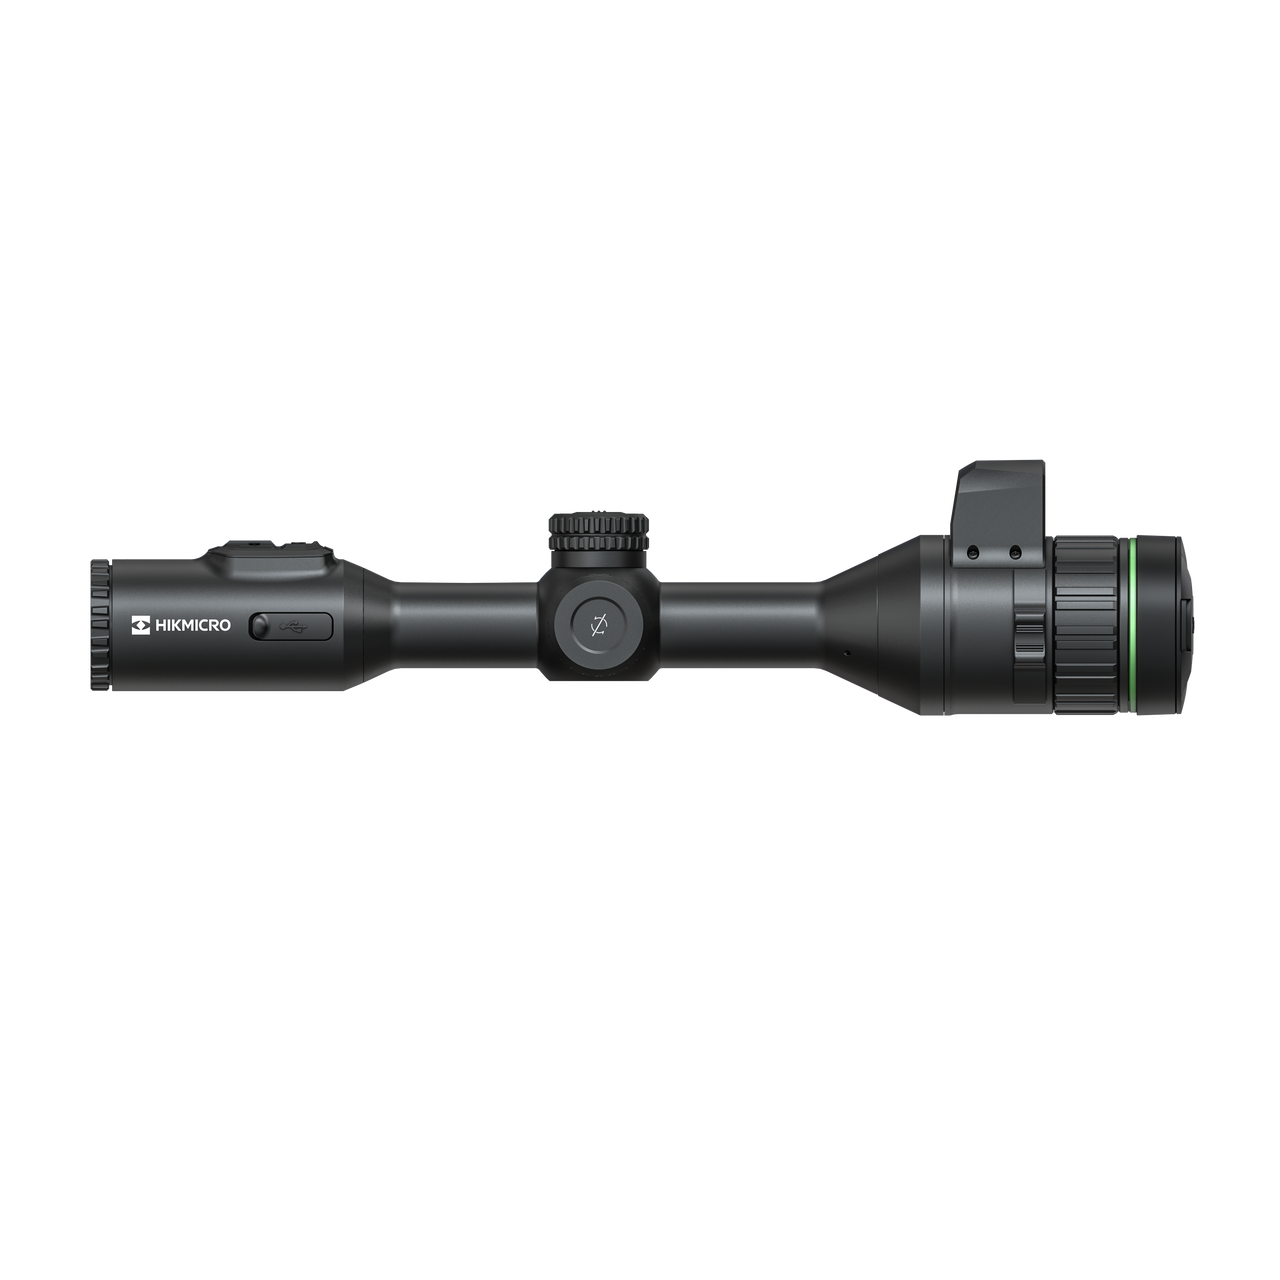 HIKMICRO Alpex HD LRF 4K Digital Riflescope (A50EL)